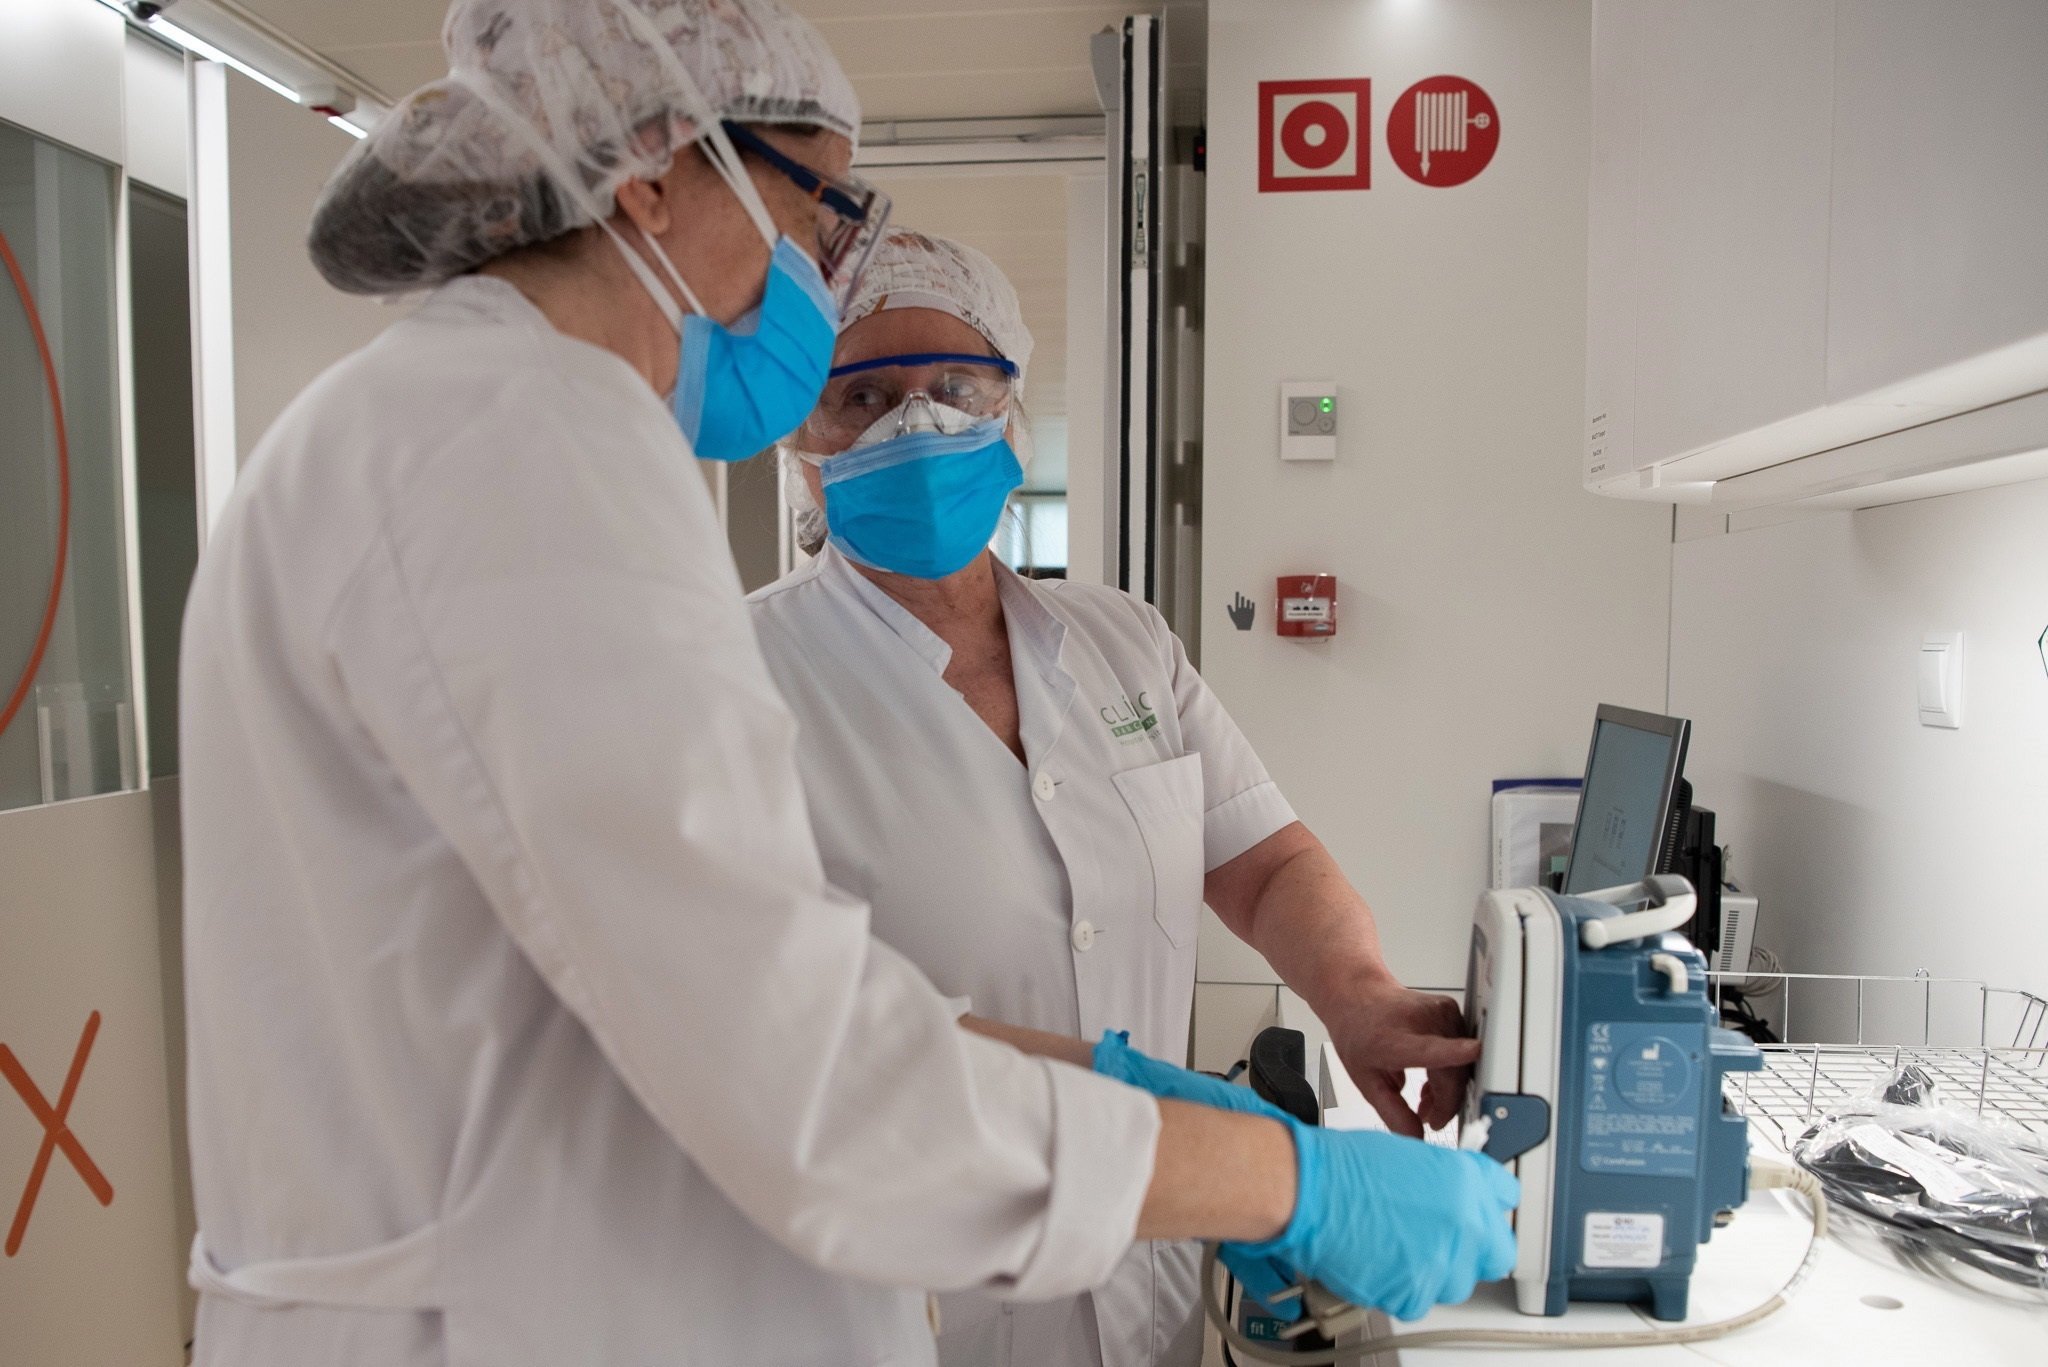 Coronavirus | Ràbia a Andalusia per les màscares retirades: "L'he fet servir!"